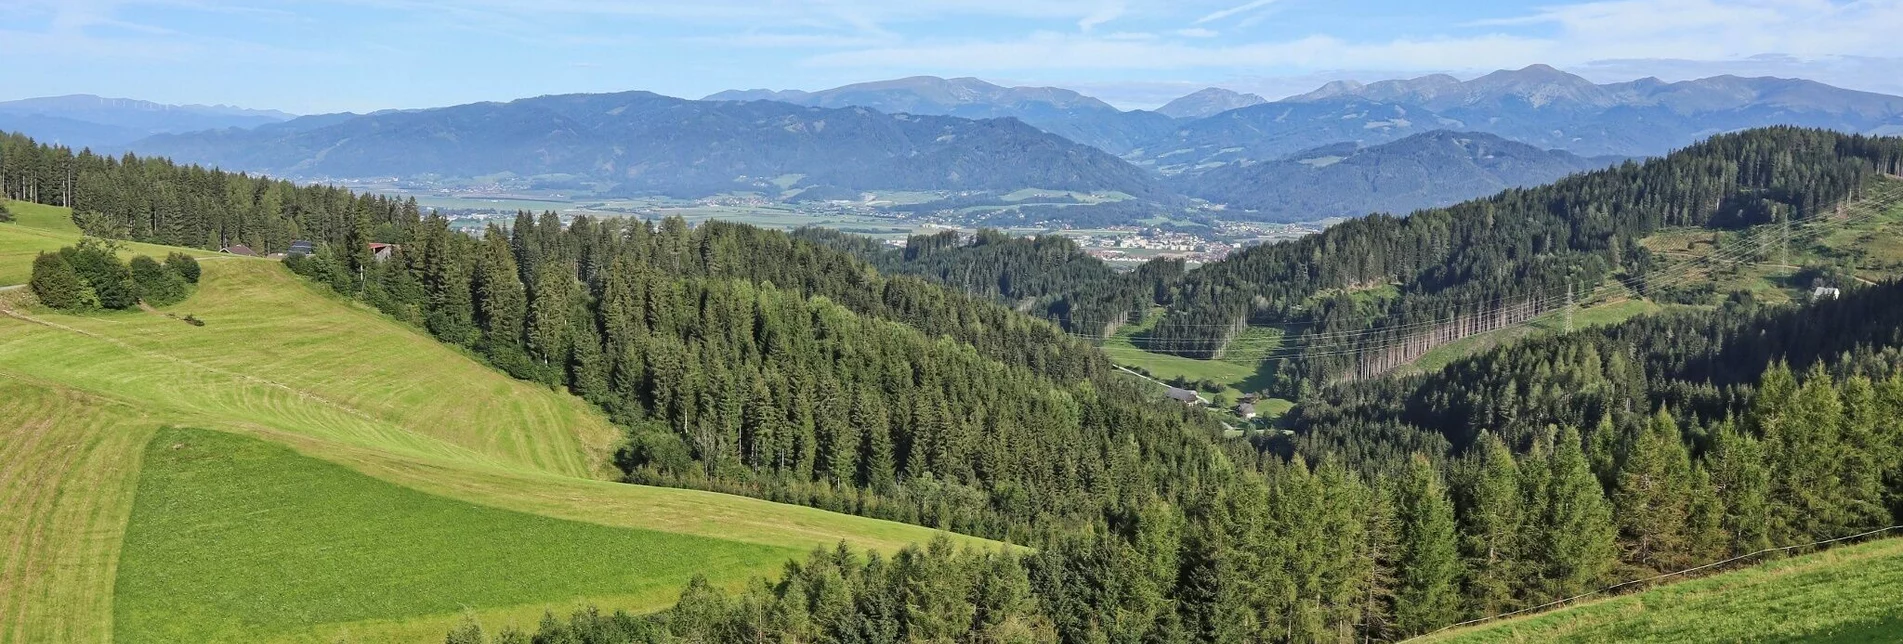 Wanderung Lobmingtaler Höhenweg – Eine Streckenwanderung von Großlobming nach Kleinlobming - Touren-Impression #1 | © WEGES OG